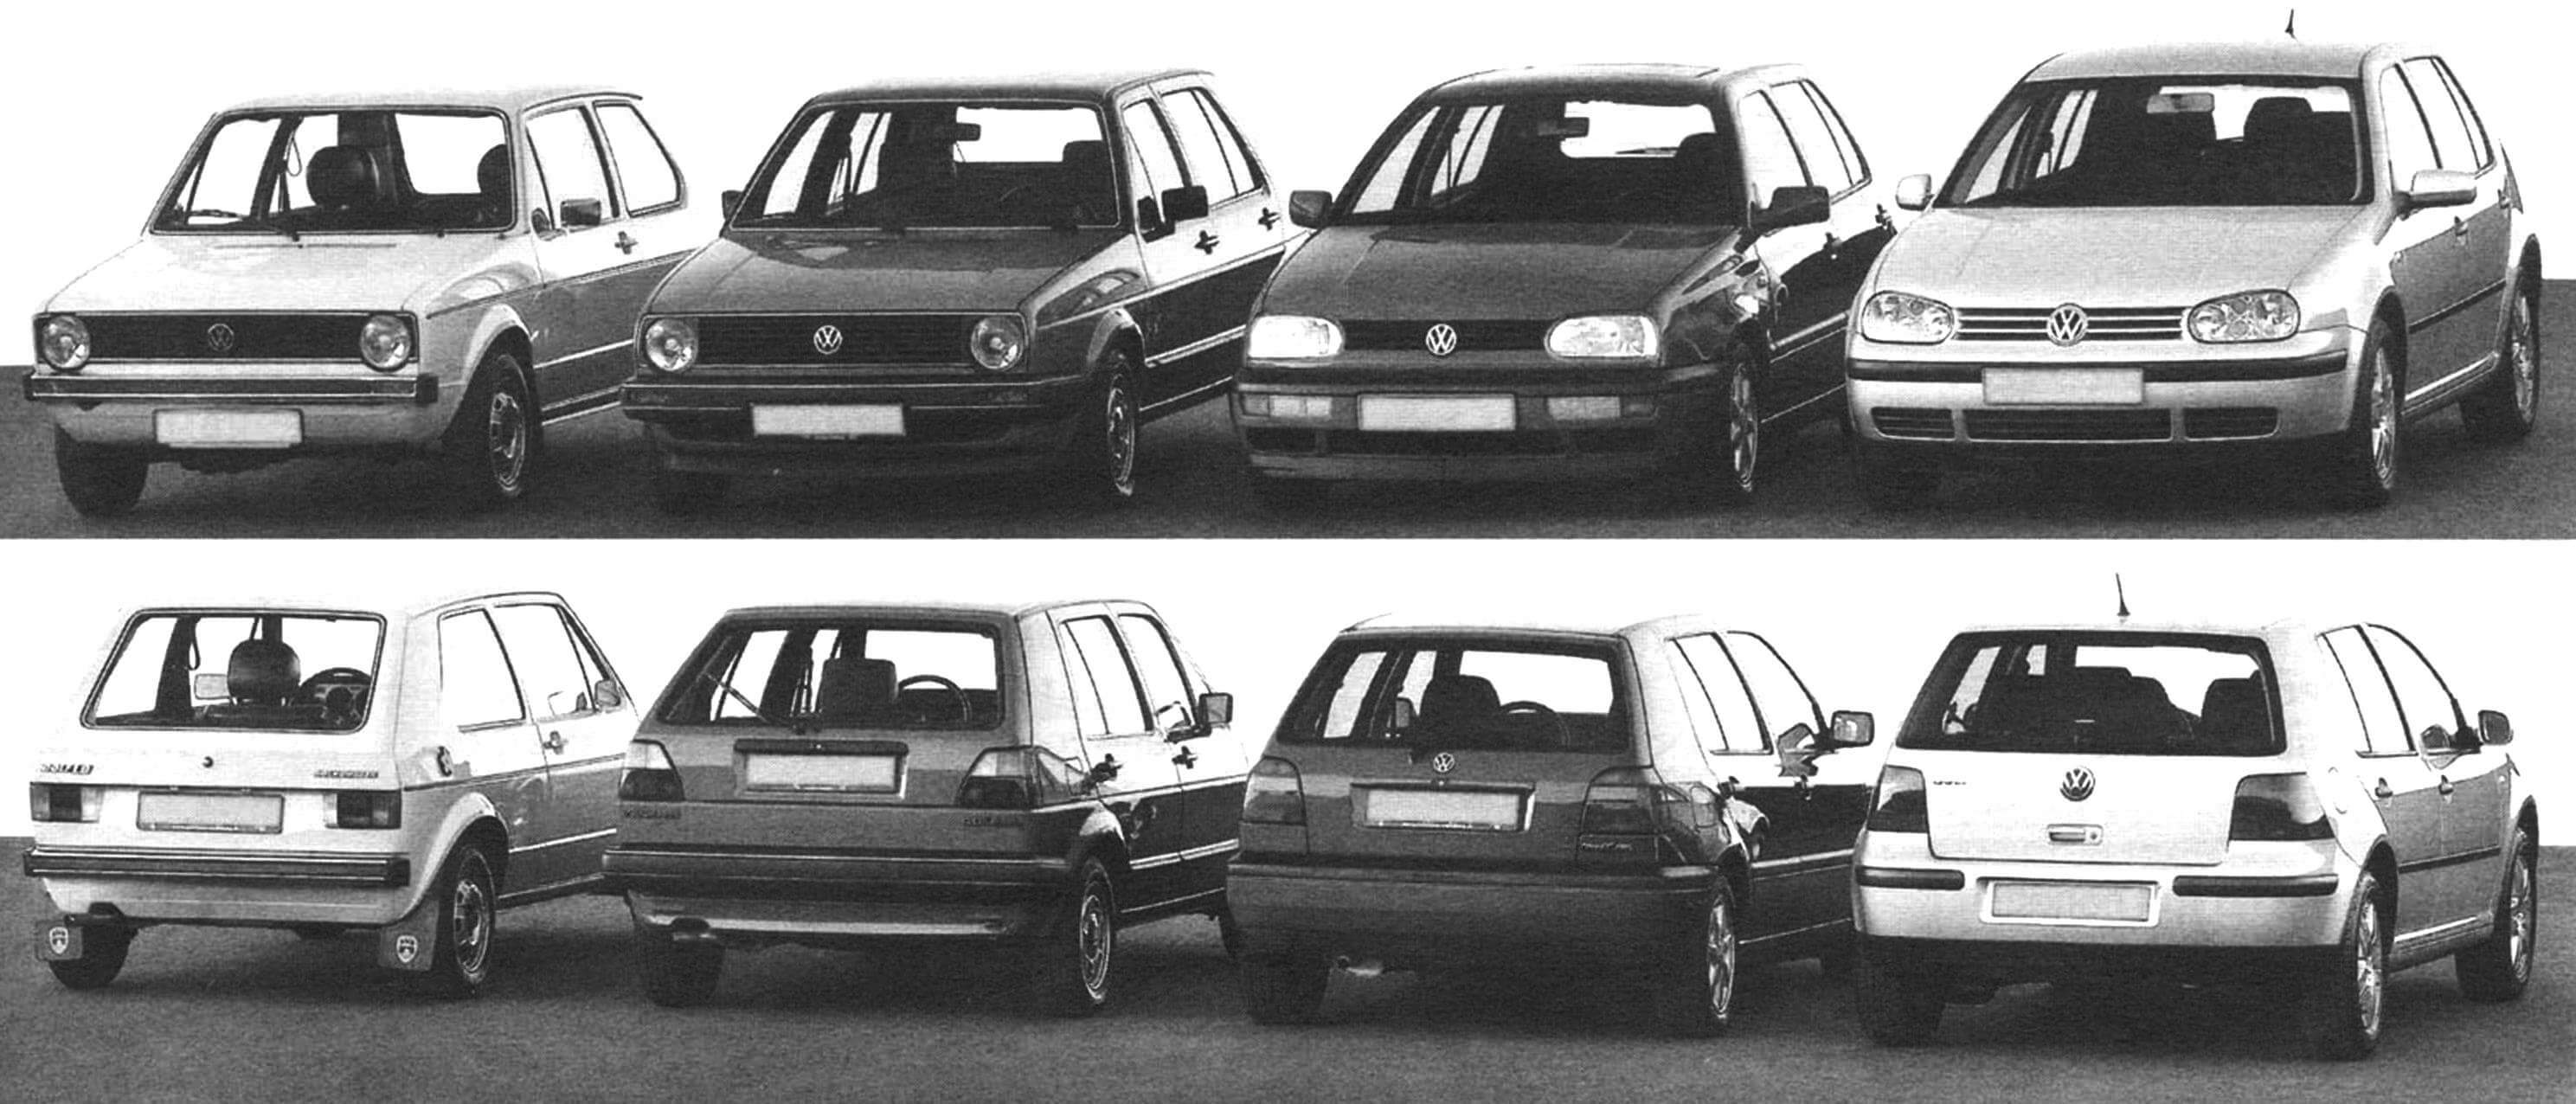 Четыре поколения автомобилей Volkswagen Golf - 1974, 1983, 1991 и 1997 годов выпуска